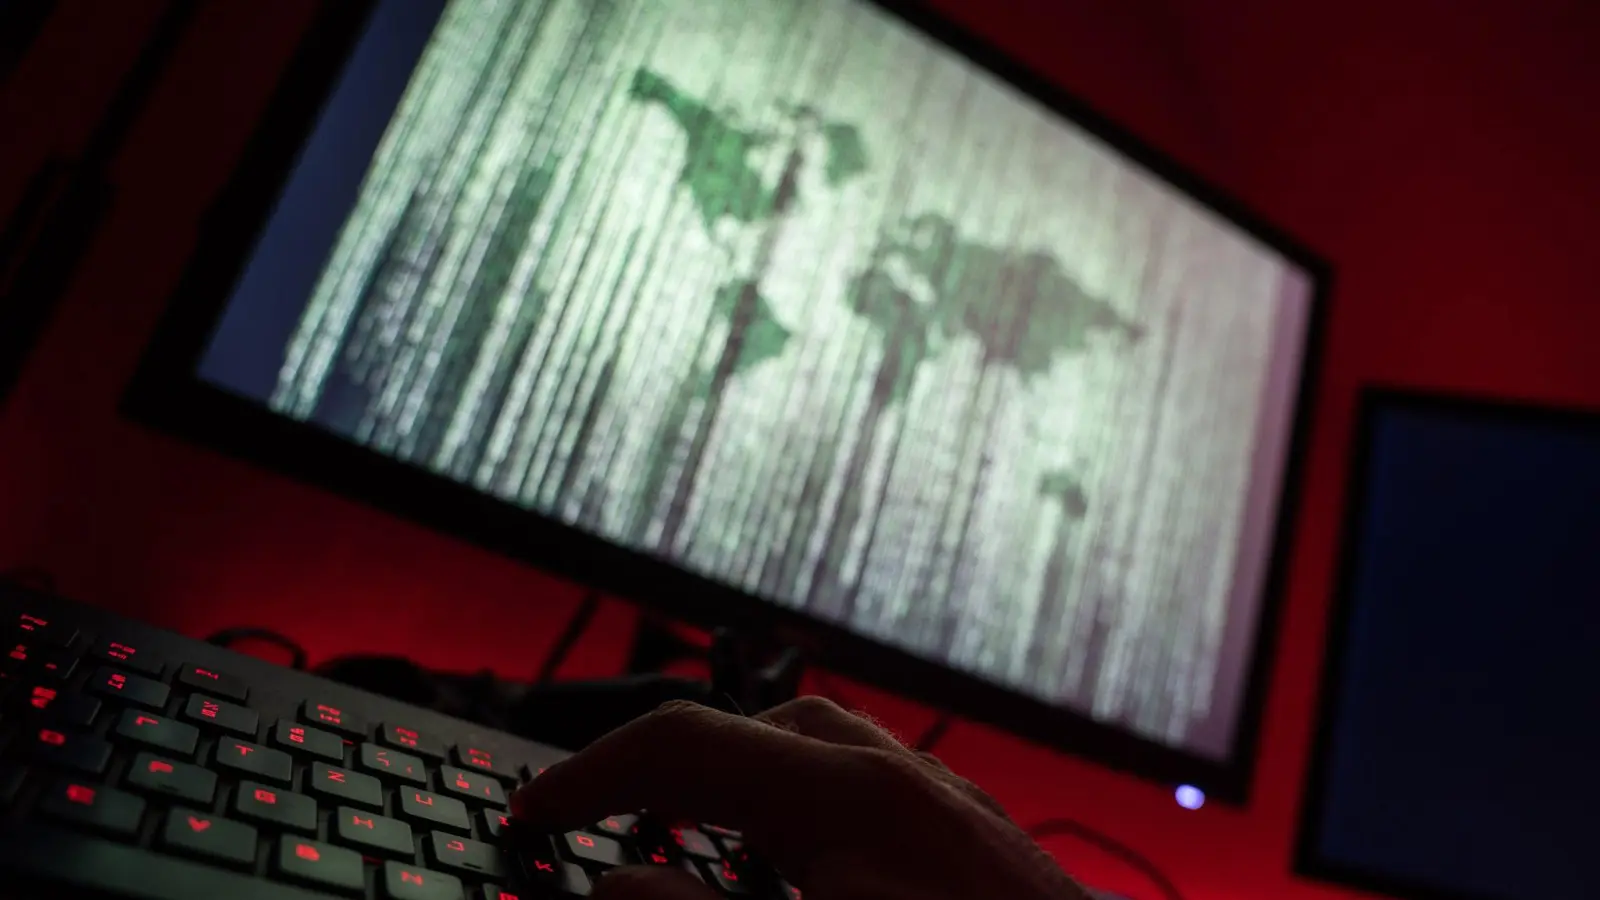 Angriff aus dem Dunkeln: Cyberkriminelle ändern die Art, wie sie arbeiten. Schutz bieten nach wie vor regelmäßige Sicherheitskopien. (Foto: Nicolas Armer/dpa/dpa-tmn)